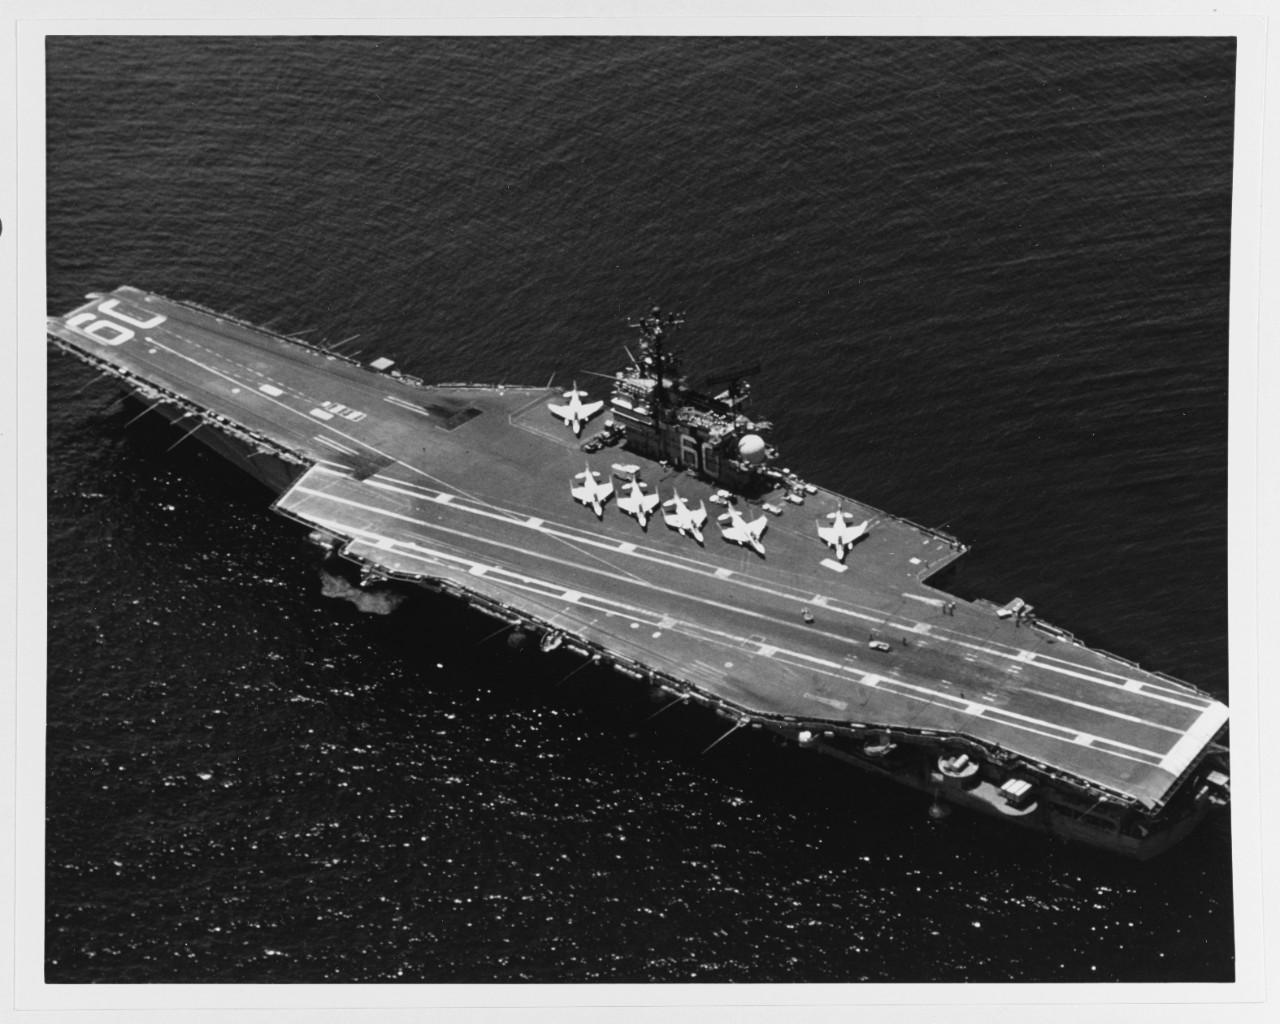 USS SARATOGA (CV-60)